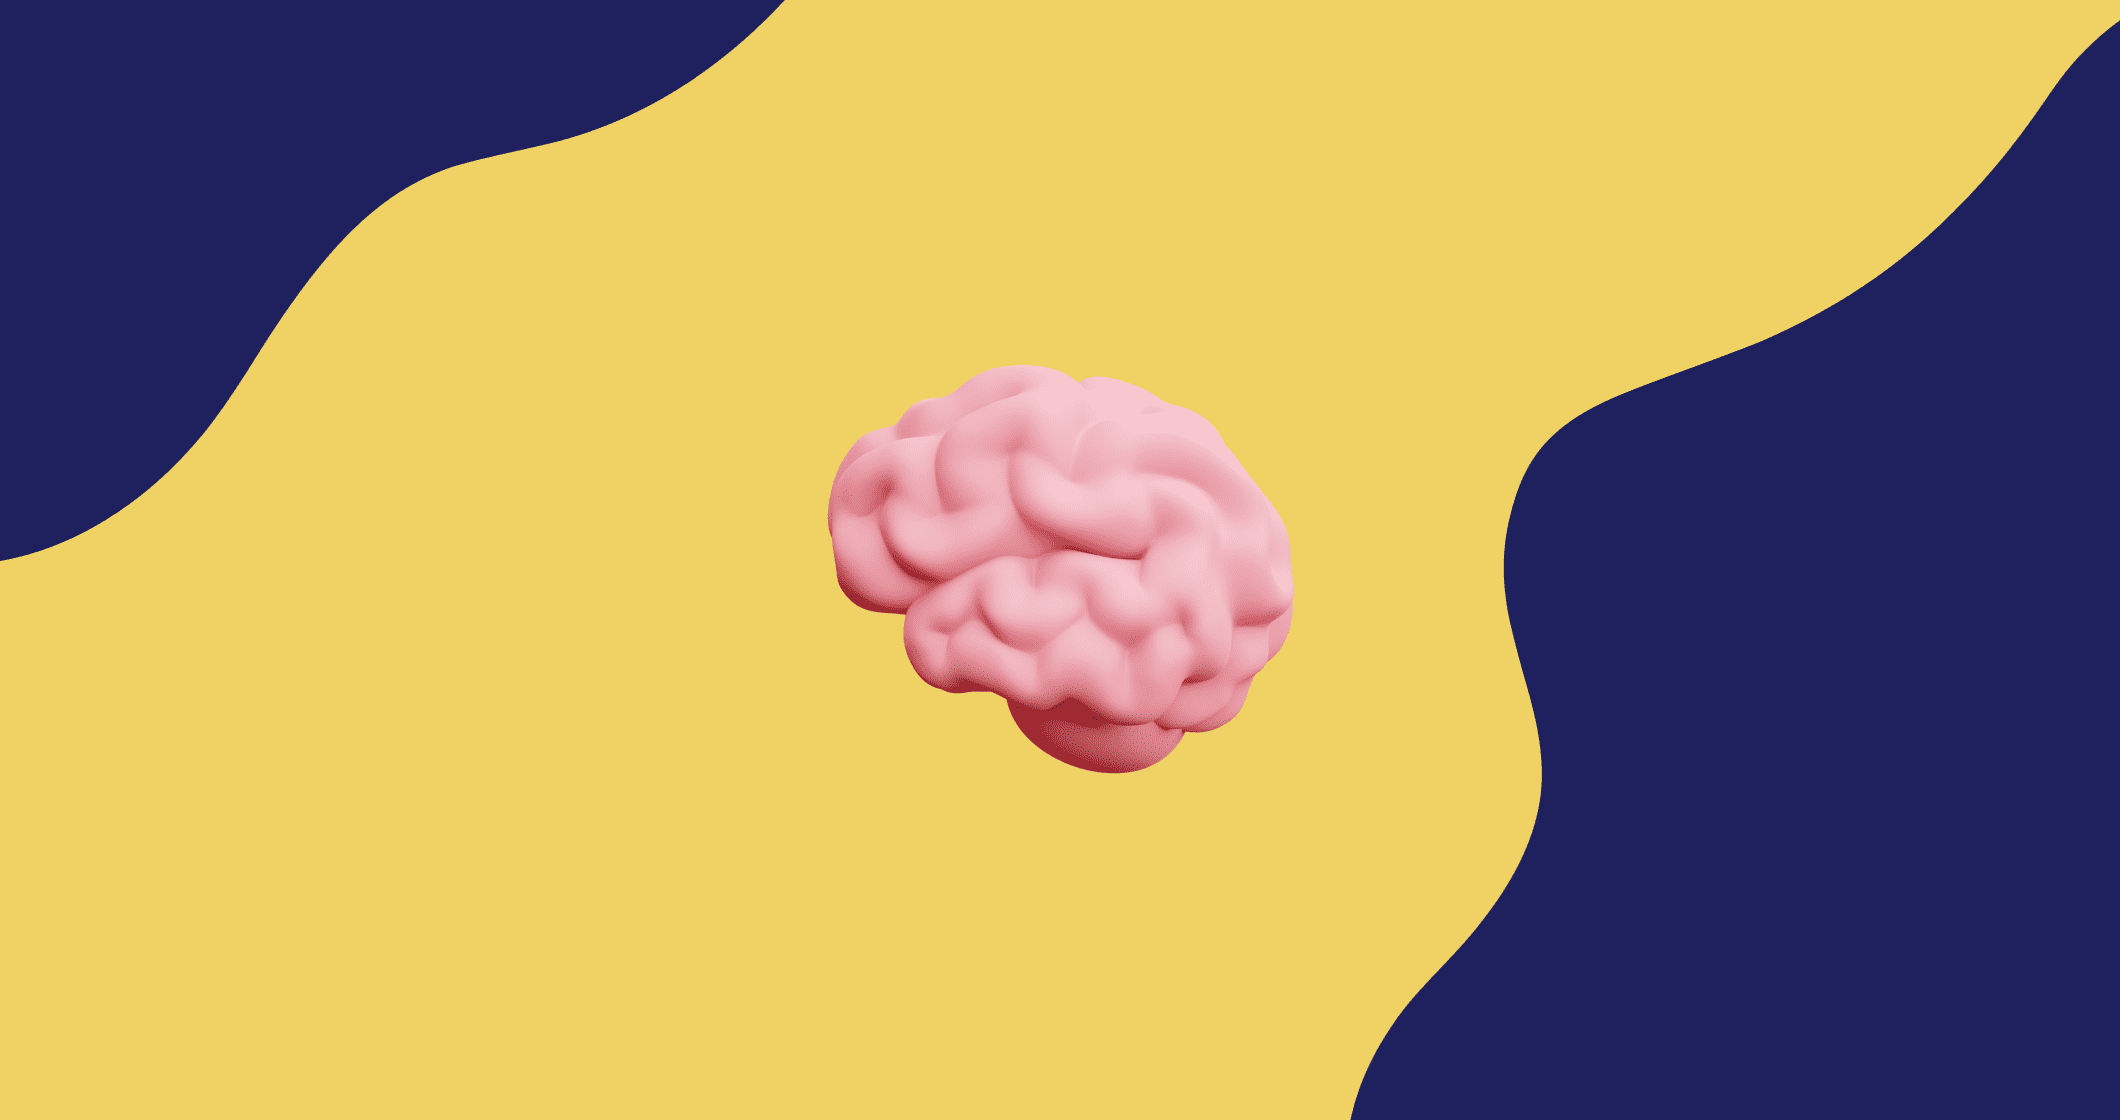 Um cérebro rosa sobre fundo azul e amarelo, elaborando um mapa mental.